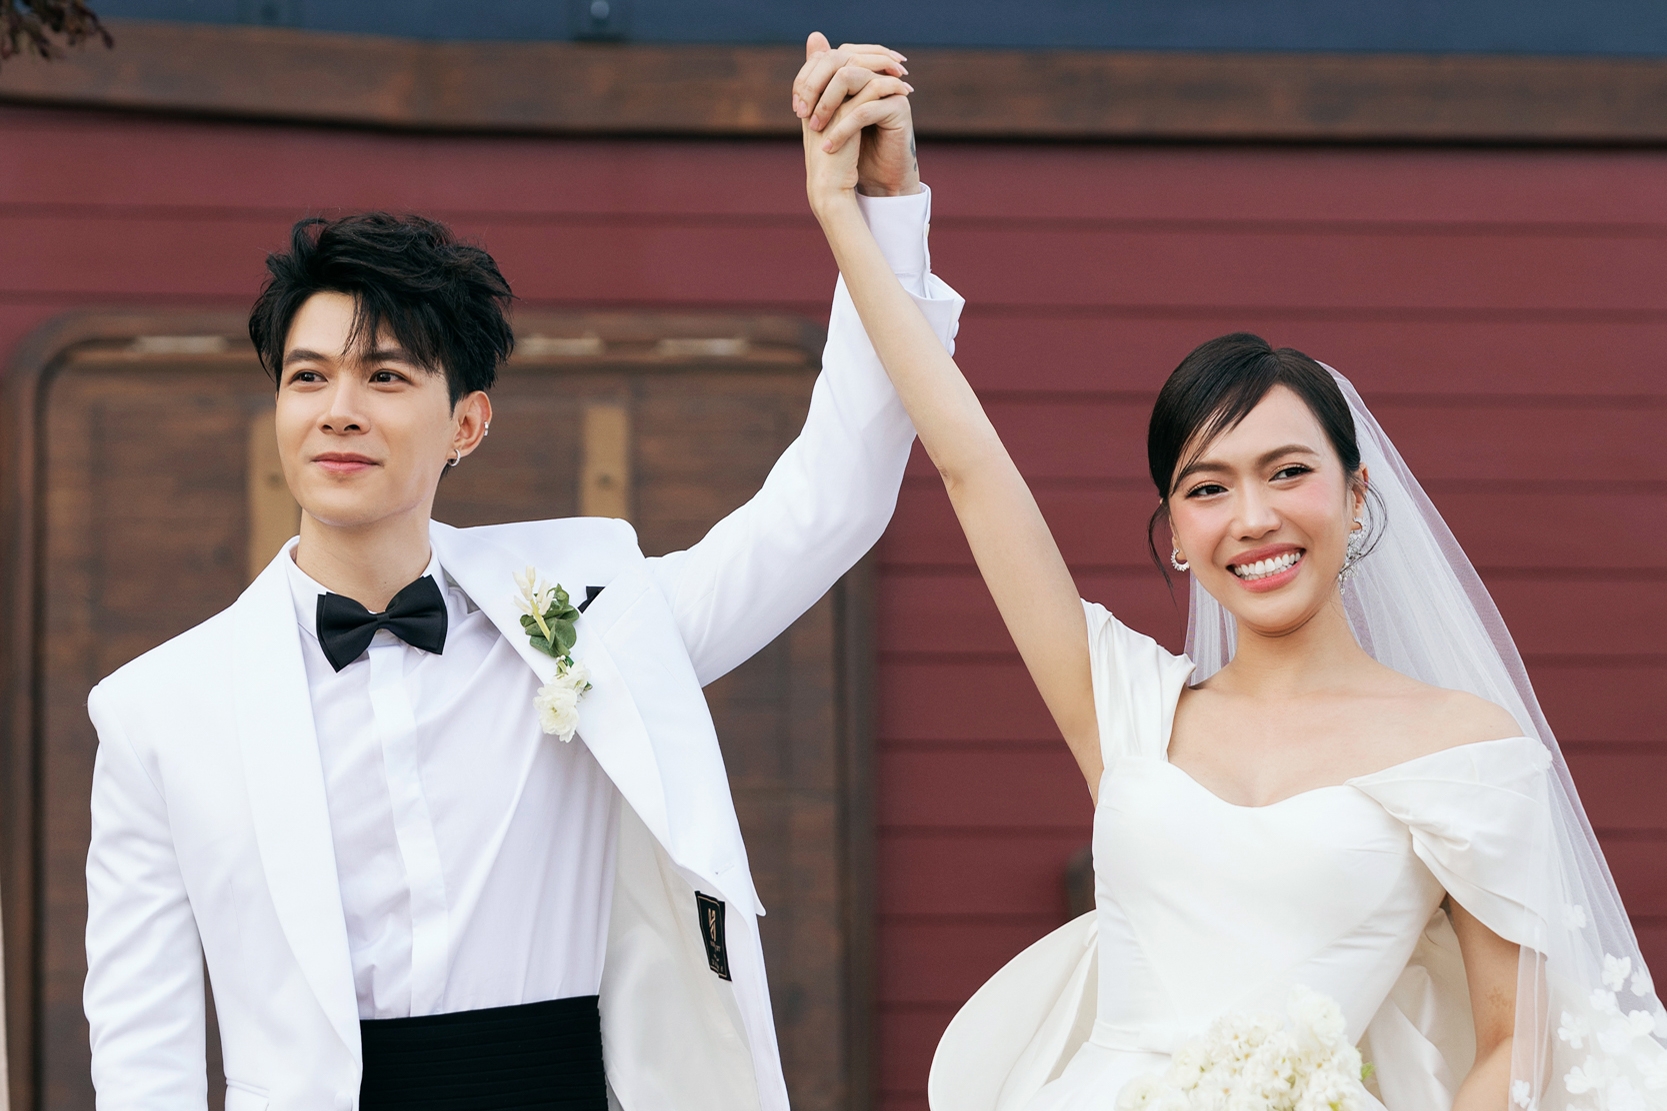 Thông tin lễ cưới tiếp theo của cặp đôi Diệu Nhi - Anh Tú tại Hà Nội